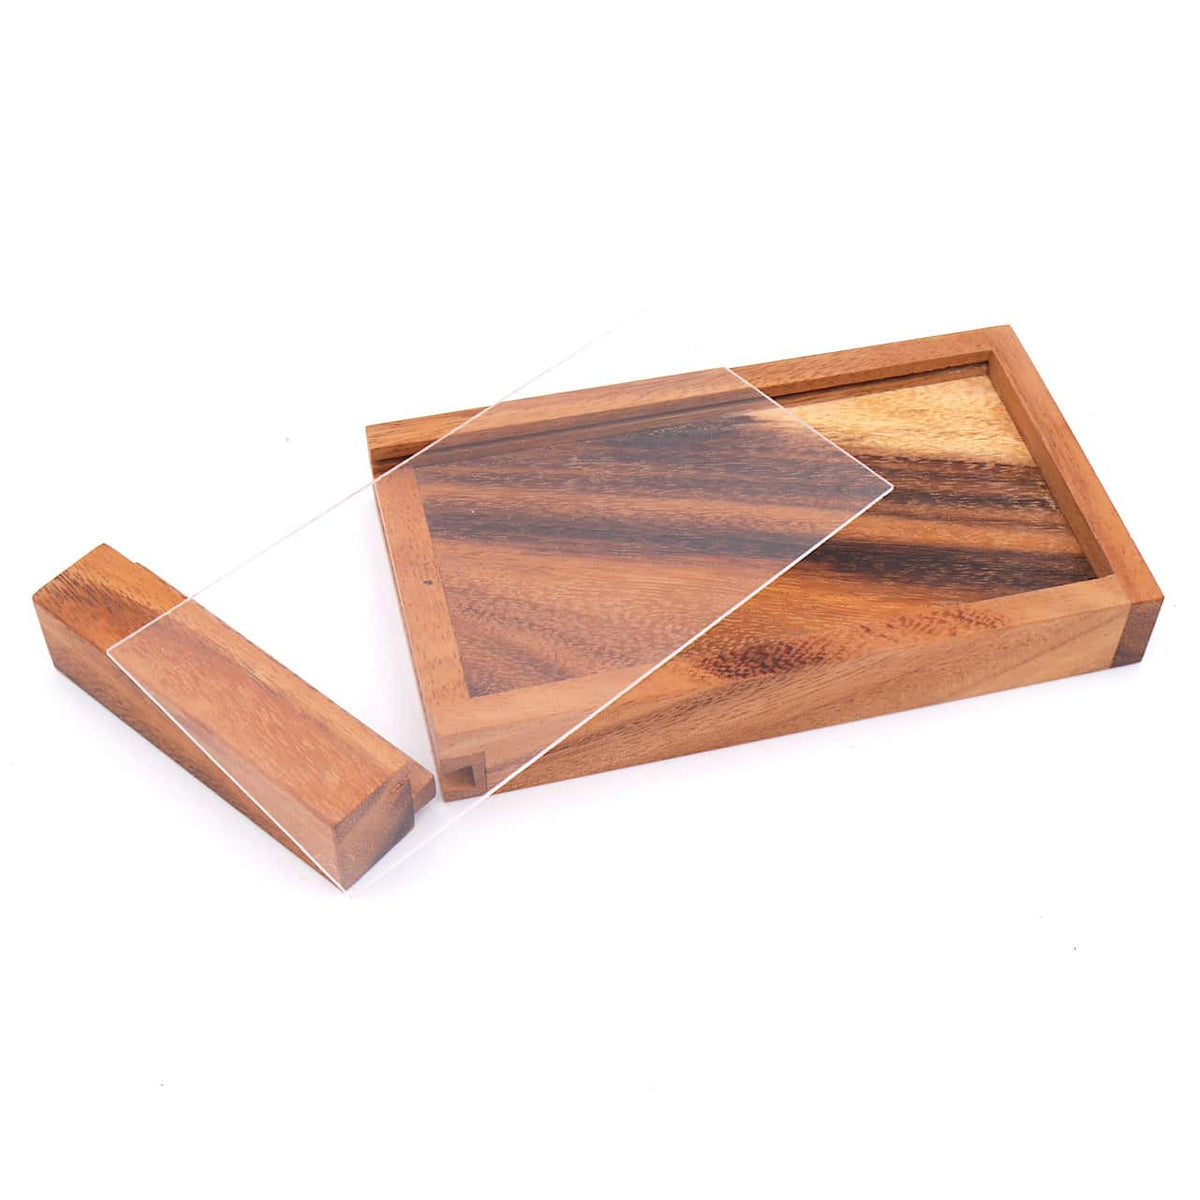 Geldgeschenkbox aus Holz zerlegt in alle Einzelteile bestehend aus Holzbox, Acryldeckel und Verschluss.